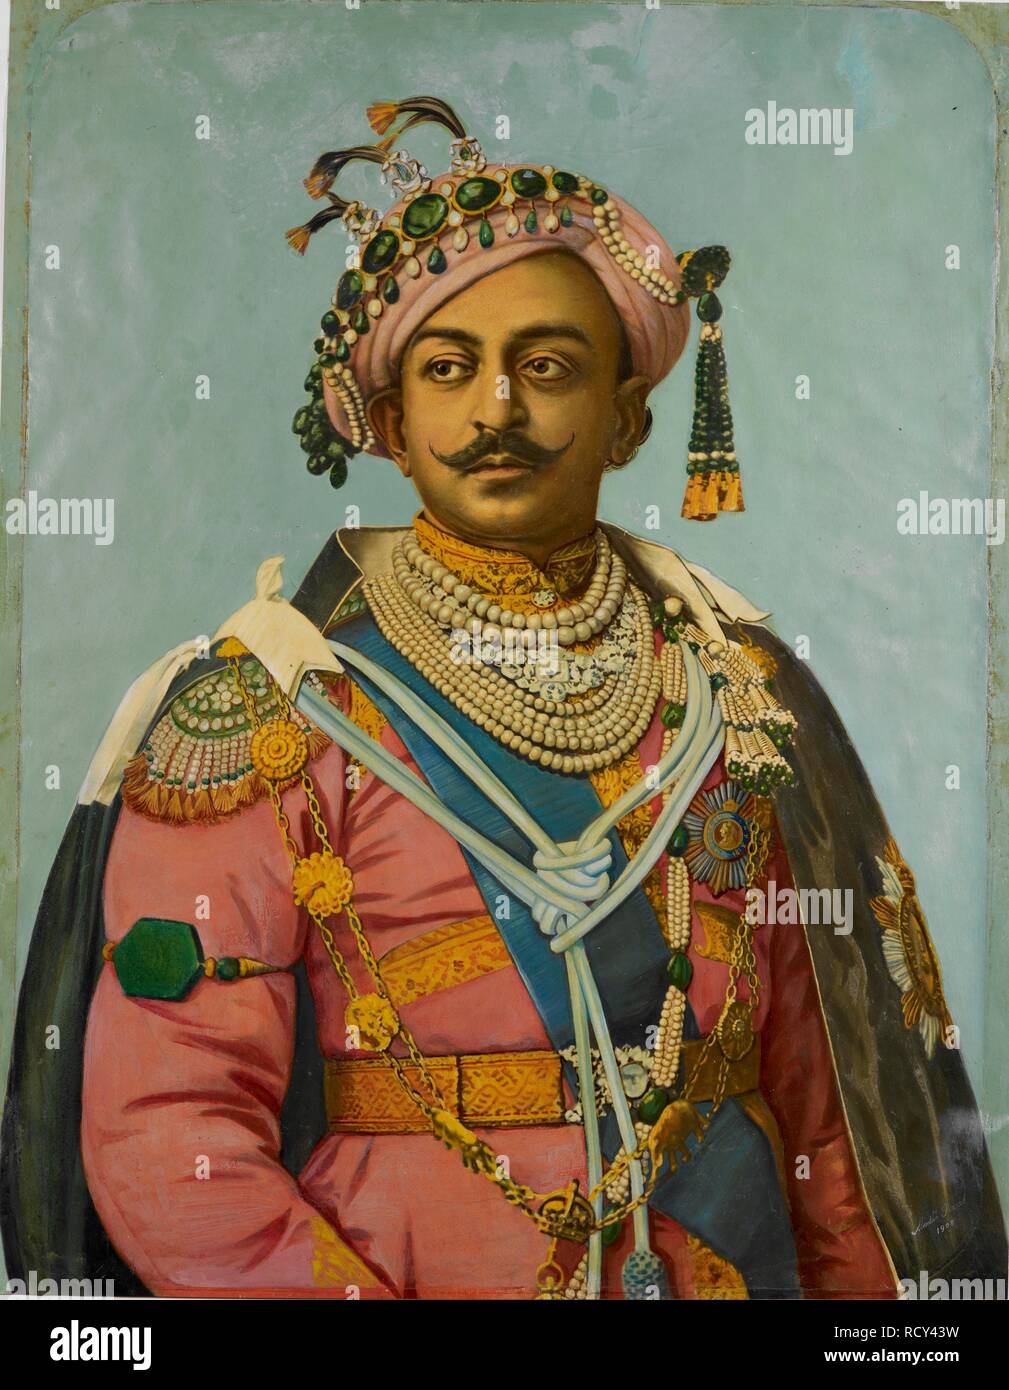 Portrait de Maharaja de Bénarès. H.H. Monsieur Madhu Narayan Singh, le Maharaja de Bénarès, avec un aperçu du portrait dessiné sur l'inverse. Signé Madho Prasad, 1908. La peinture à l'huile photographie 1909 Benares style . 1909. Source : Favoriser l'249. Banque D'Images